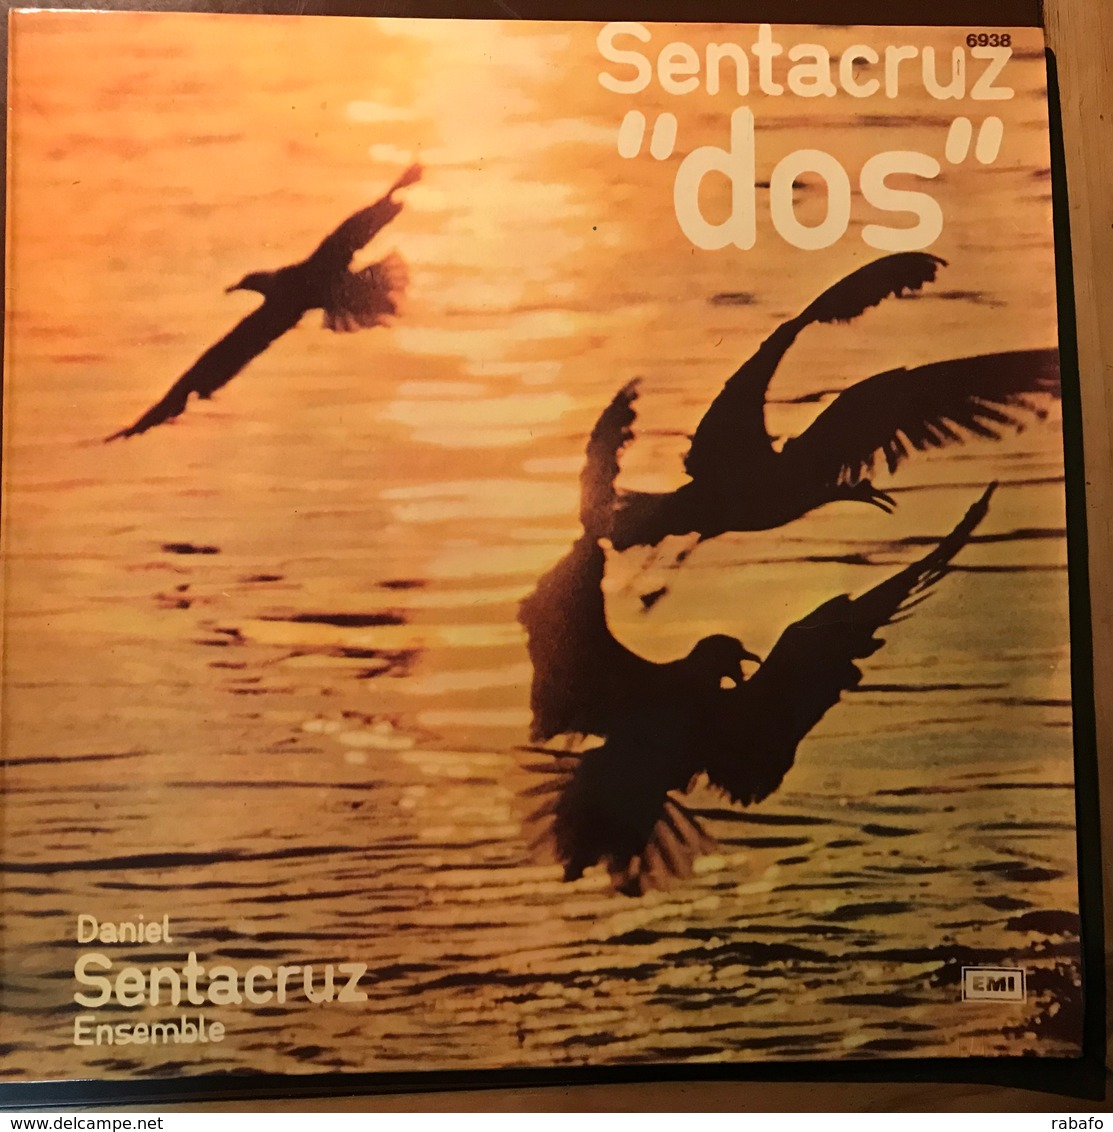 LP Argentino De Daniel Sentacruz Ensemble Año 1975 - Other - Italian Music